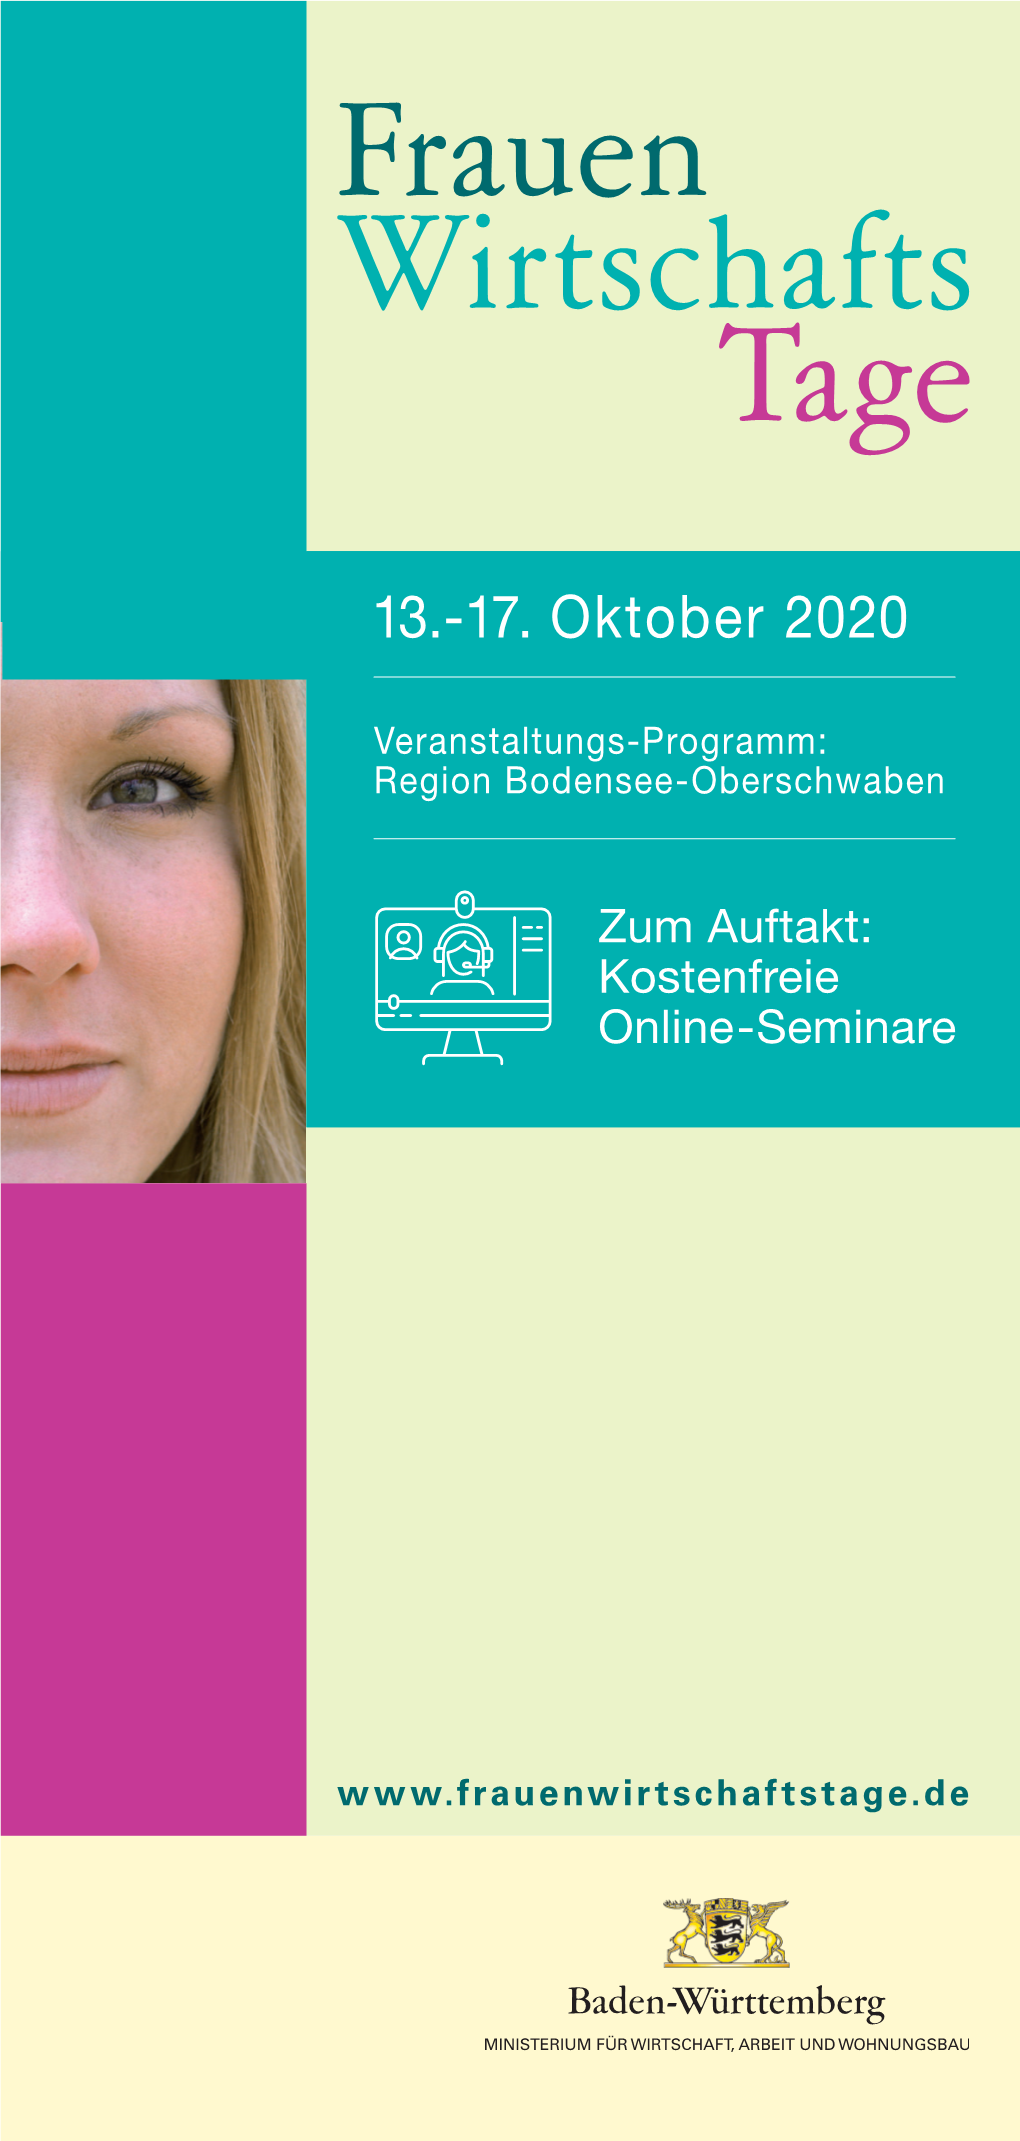 Programm Frauenwirtschaftstage 2020 Ravneburg Region Bodensee